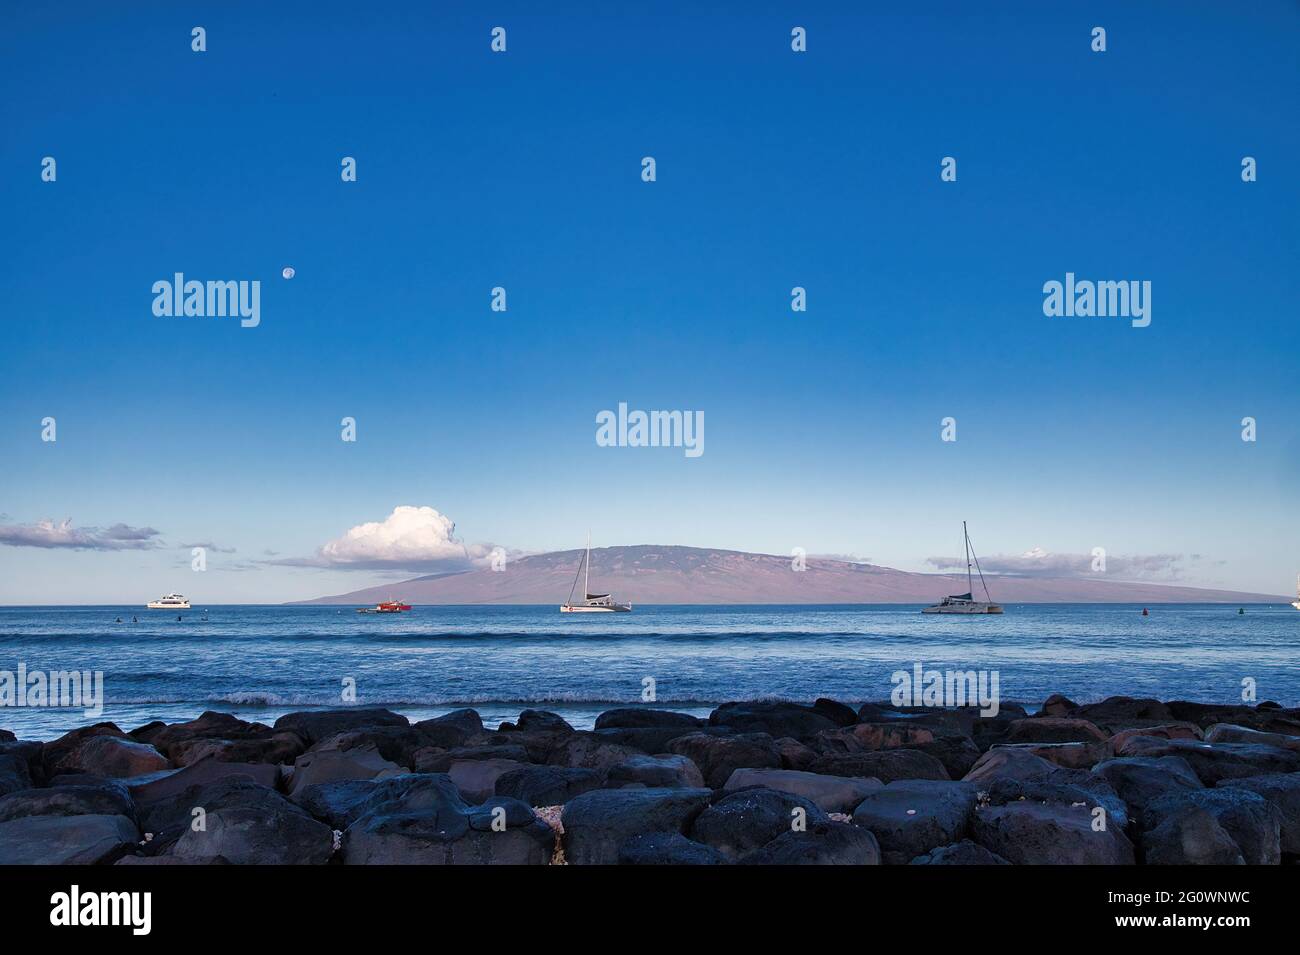 View of Lanai from Lanai harbor at dawn with moon set. Stock Photo